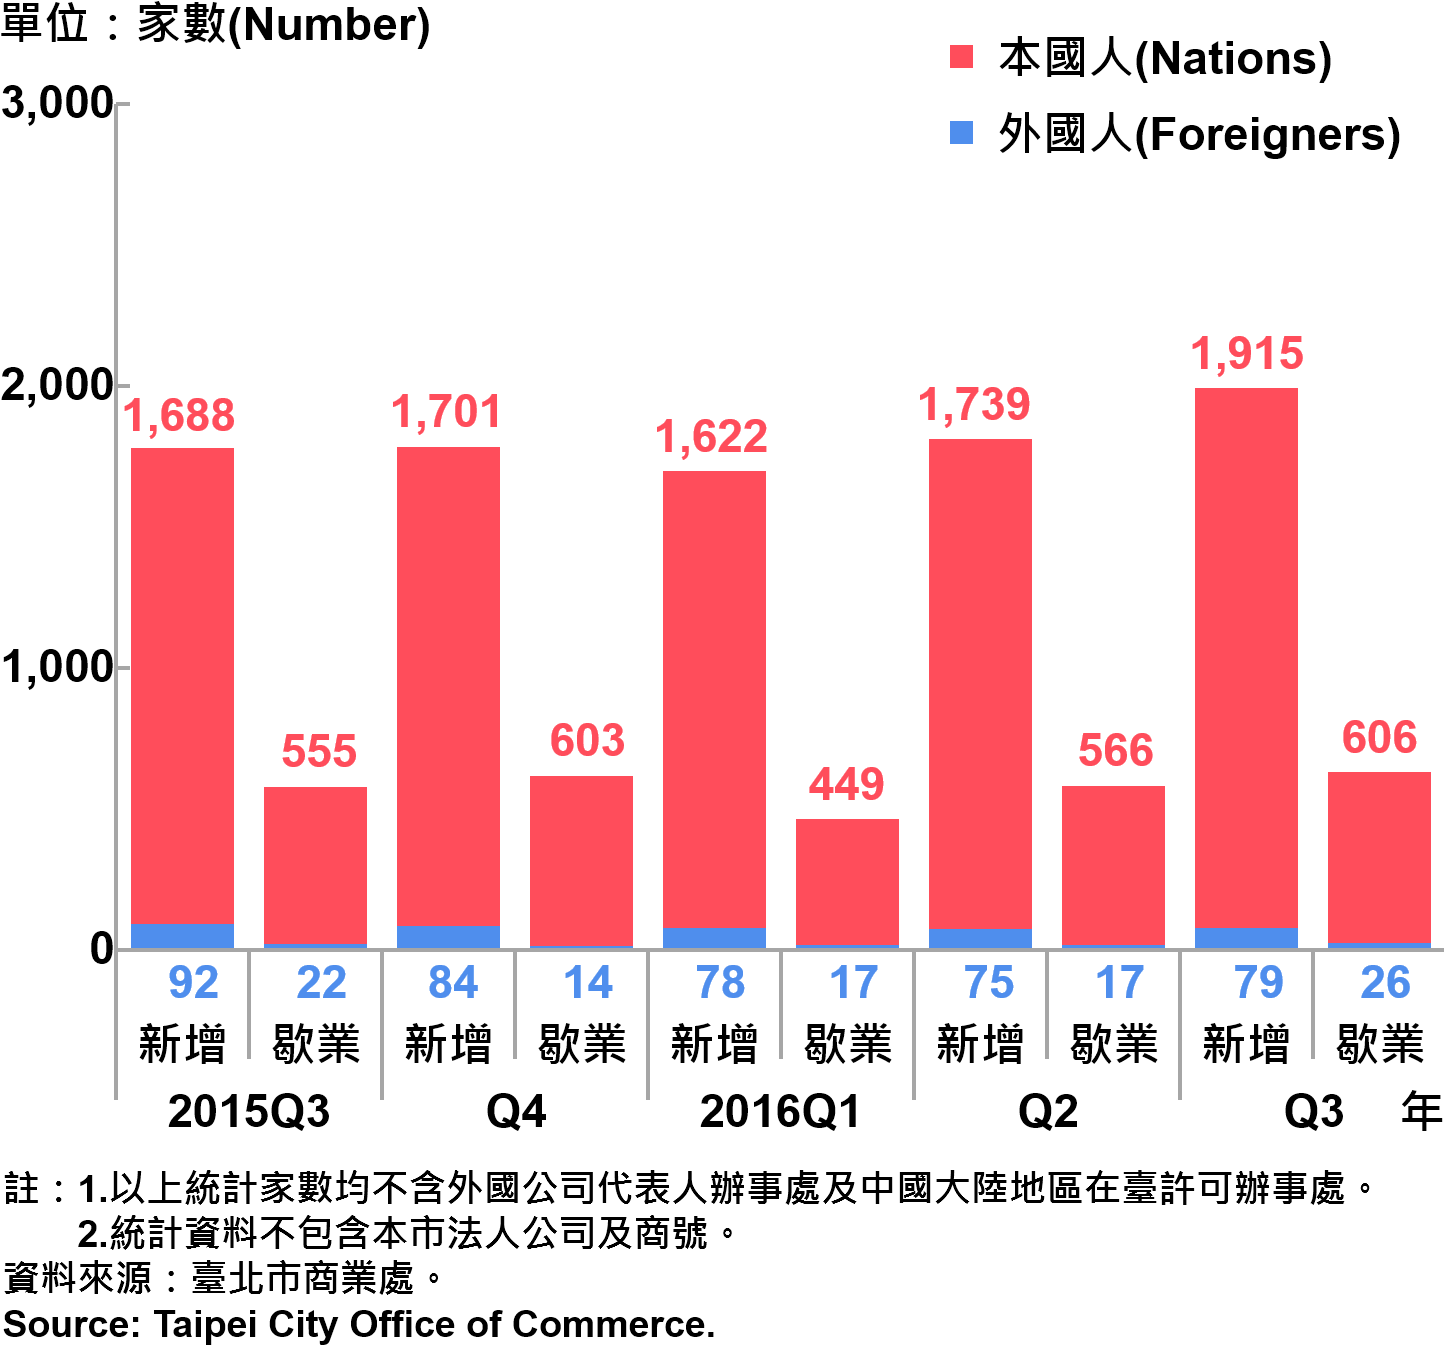 圖22、臺北市公司青創負責人為本國人與外國人分布情形—依新增及歇業家數—2016Q3 Responsible Person of Newly Registered Companies In Taipei by Nationality - Number of Incorporation/Termination —2016Q3